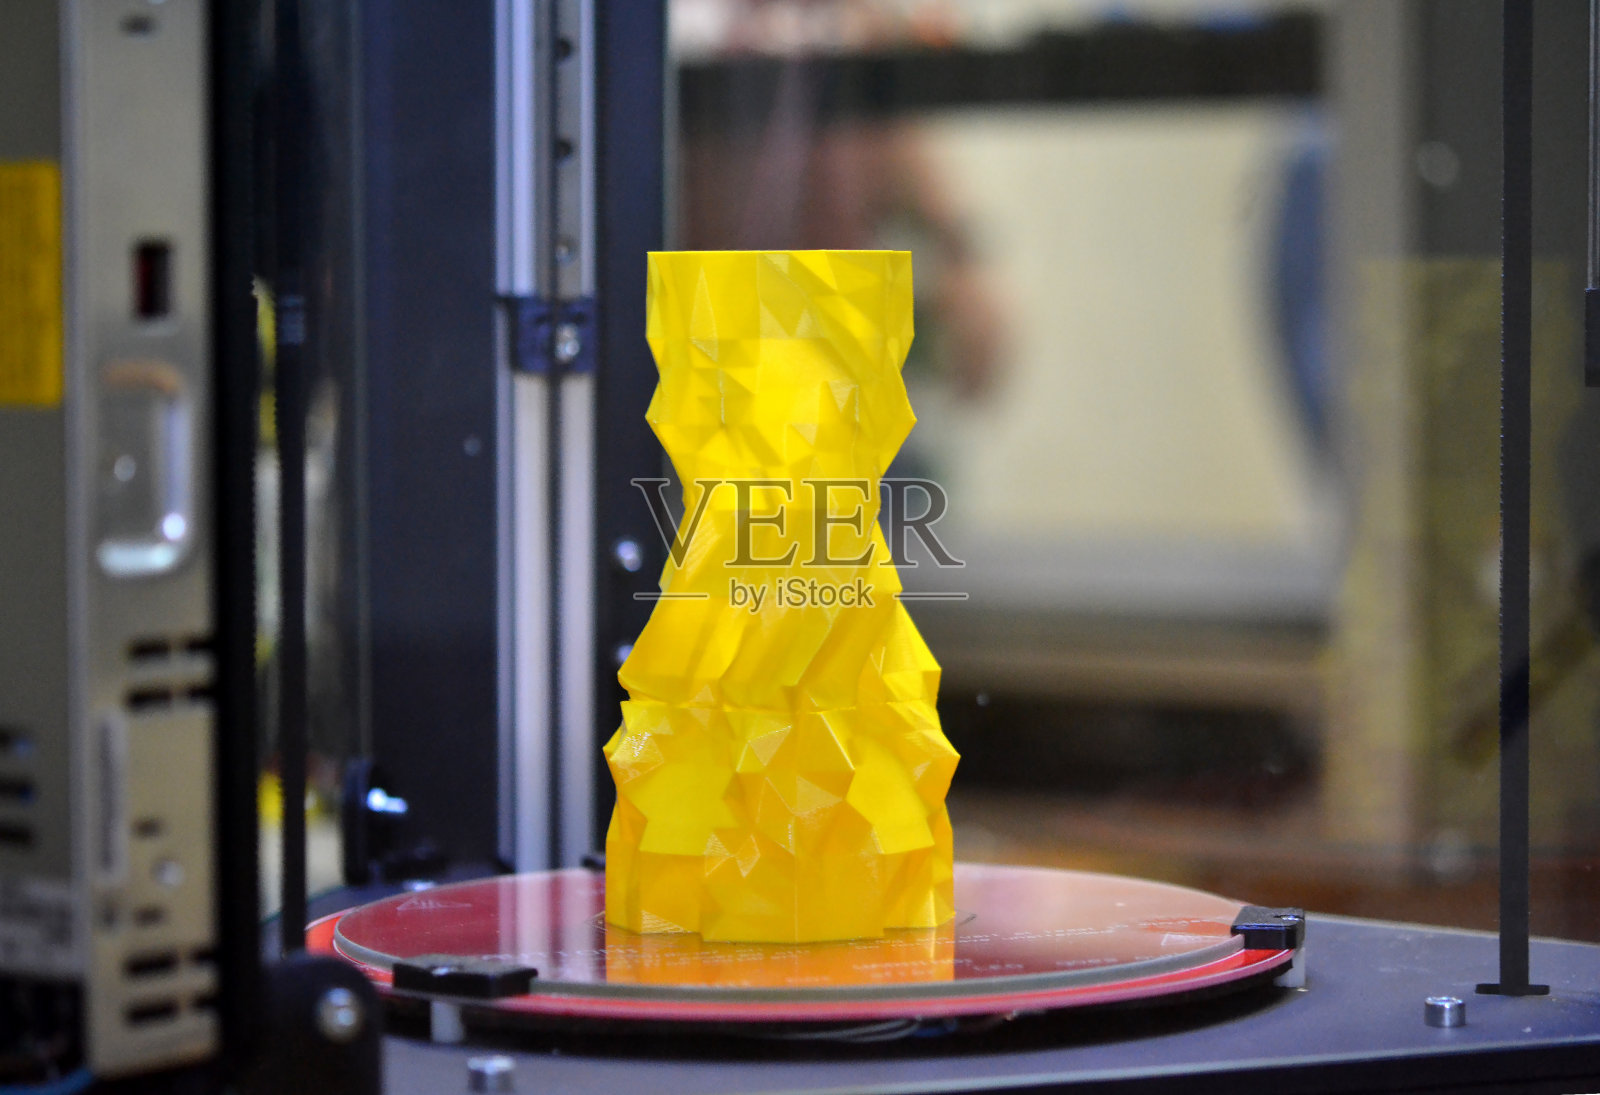 桌面上的3d打印机上放着一个黄色花瓶照片摄影图片